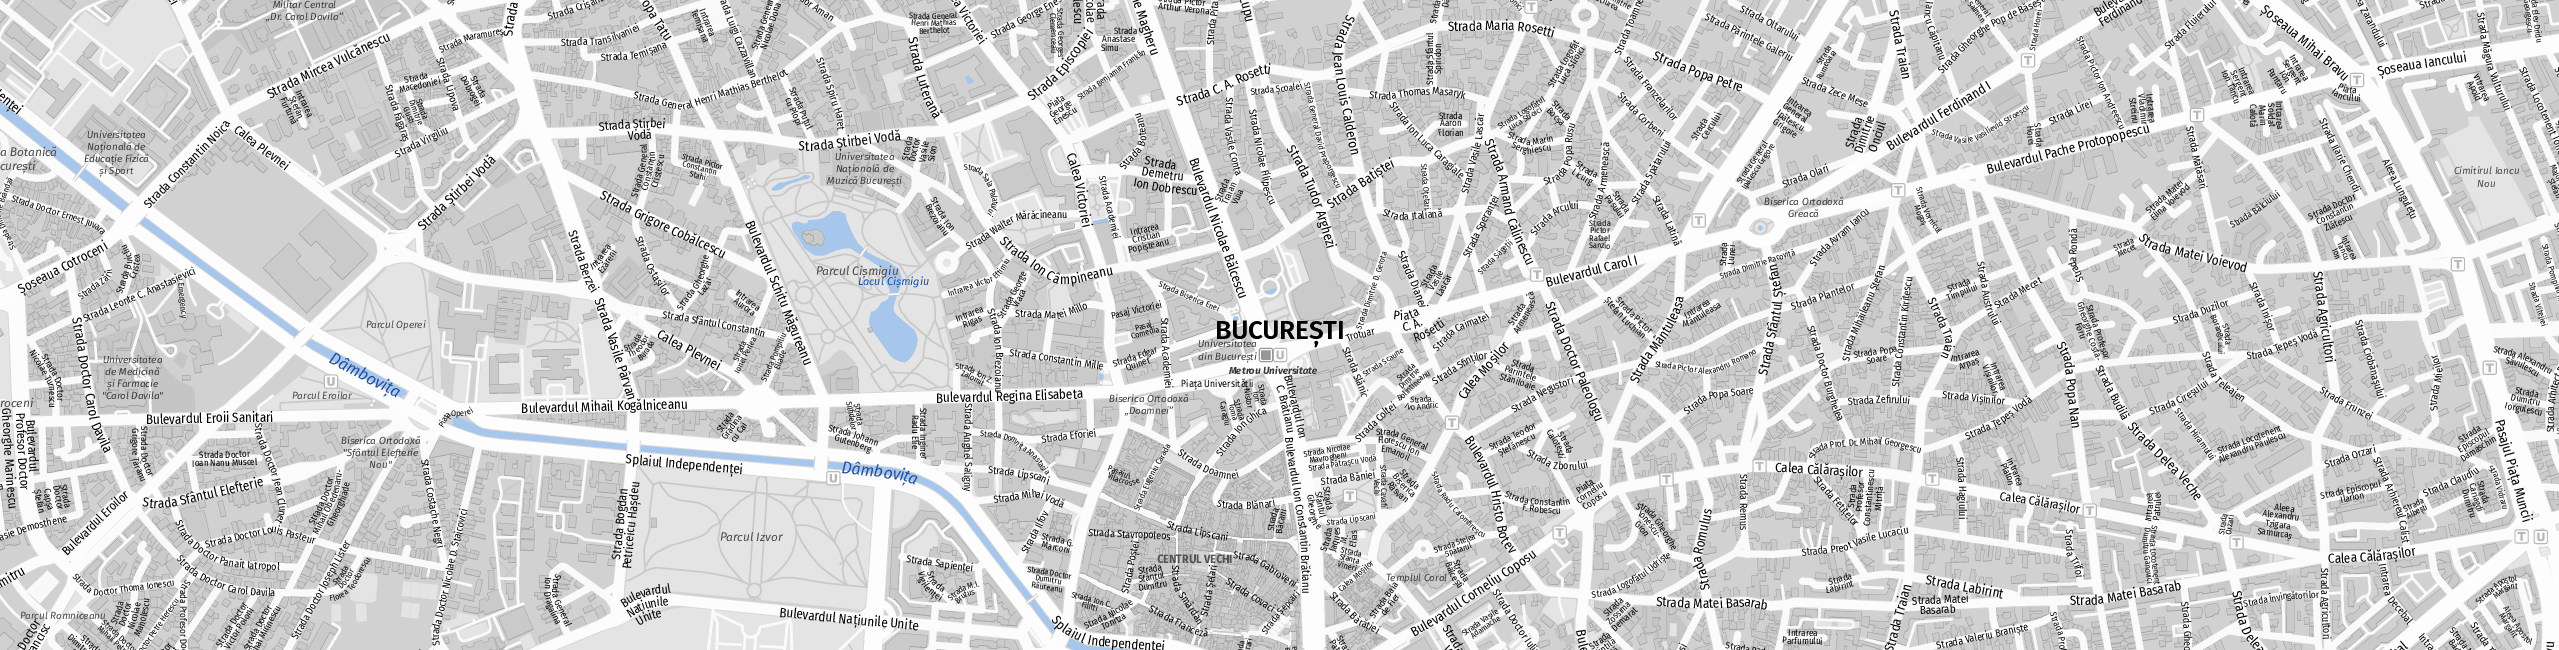 Stadtplan Bukarest zum Downloaden.